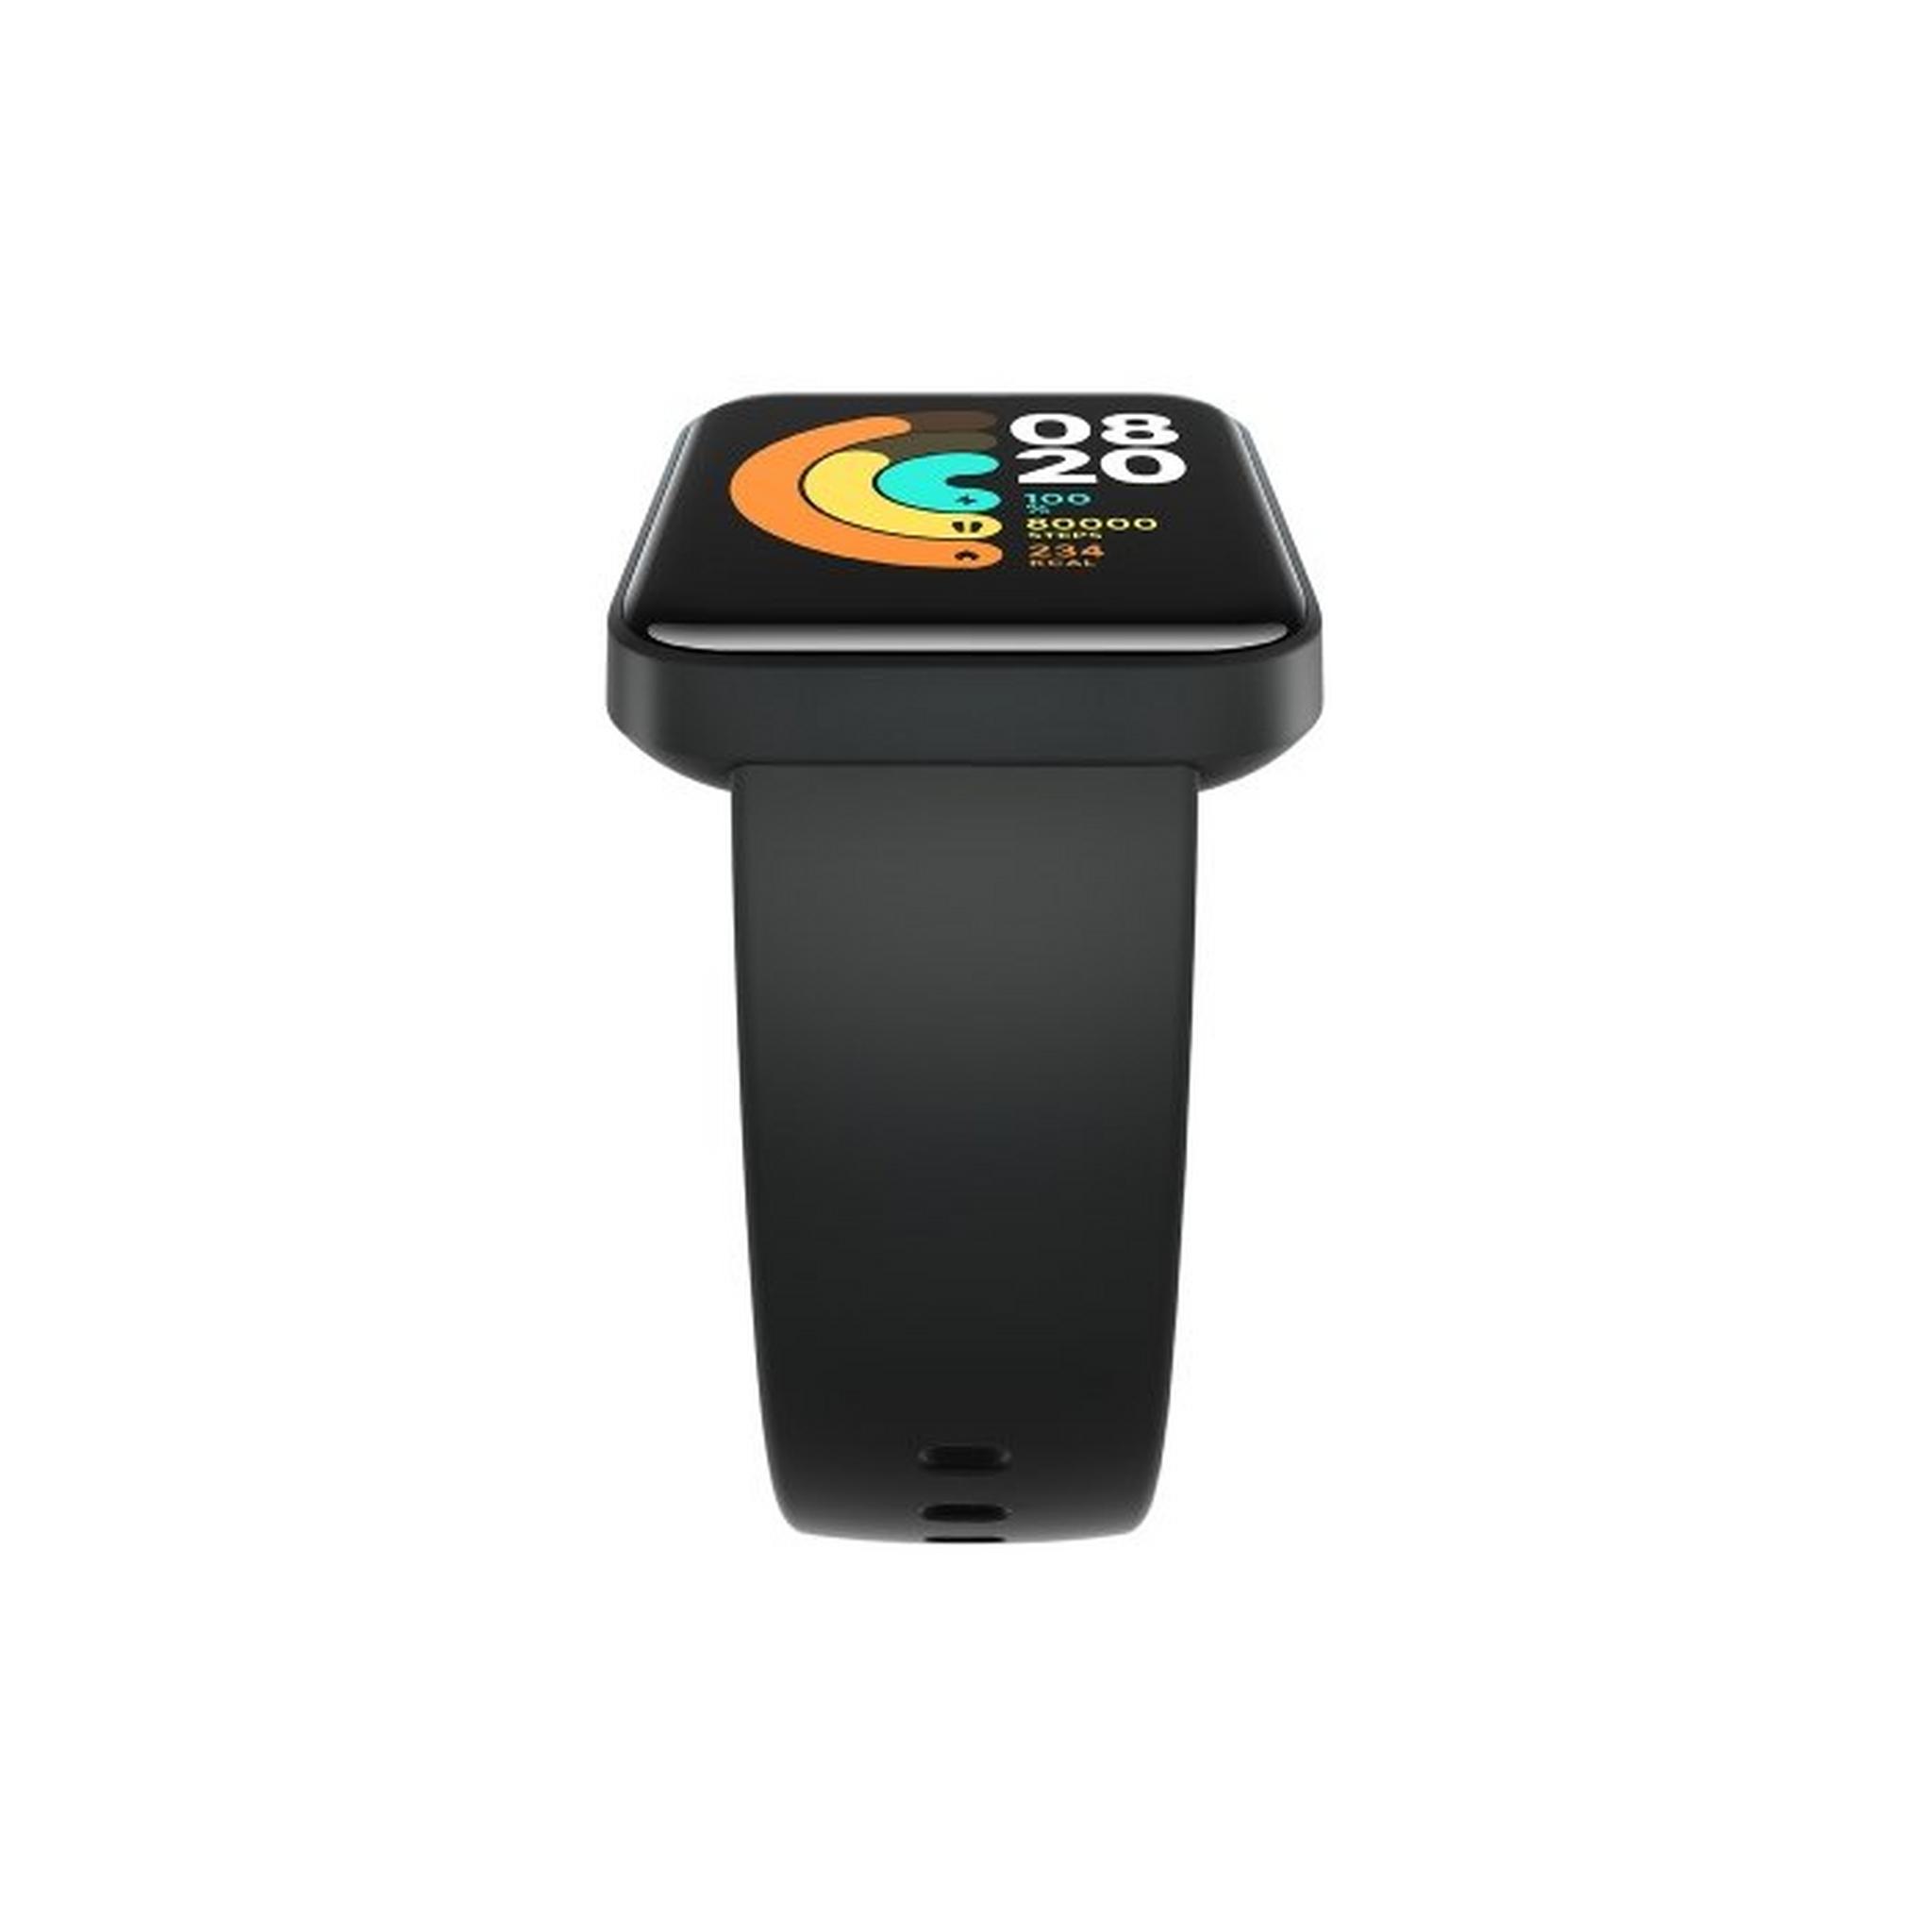 Xiaomi Mi Smart Watch Lite (BHR4357GL) - Black